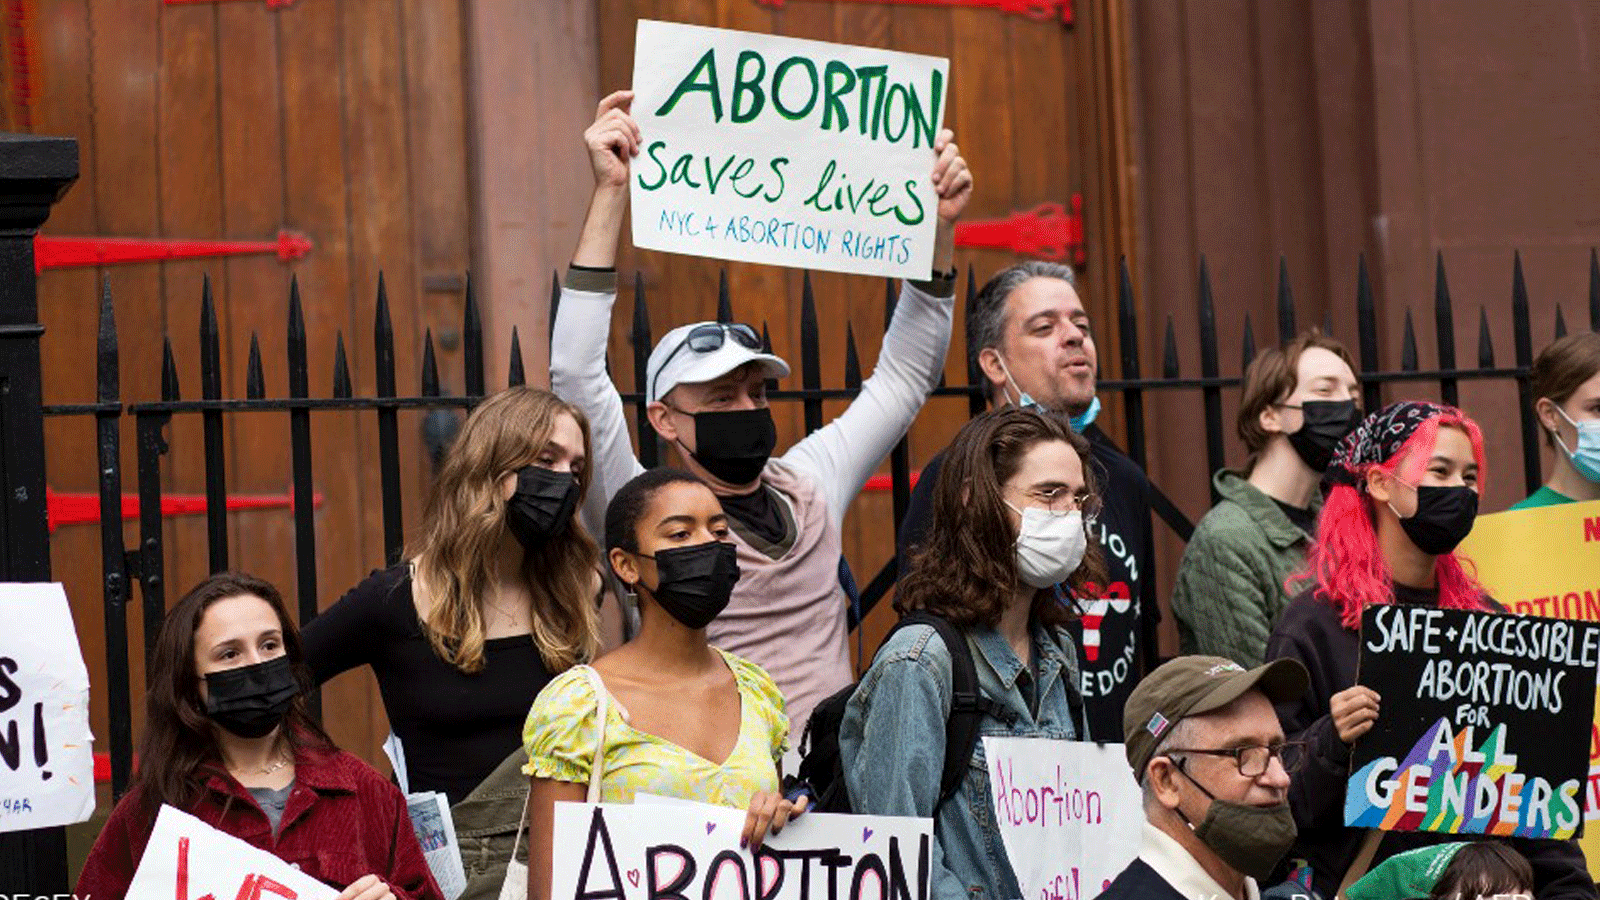 متظاهرون أمام المحكمة الأميركية العليا التي تضم أغلبية محافظة 6-3 ، في تحديات لقانون تكساس الذي يحدّ بشكلٍ كبير من الوصول إلى حق الإجهاض، الذي أثار معركةً قانونية وسياسية شرسة في البلاد